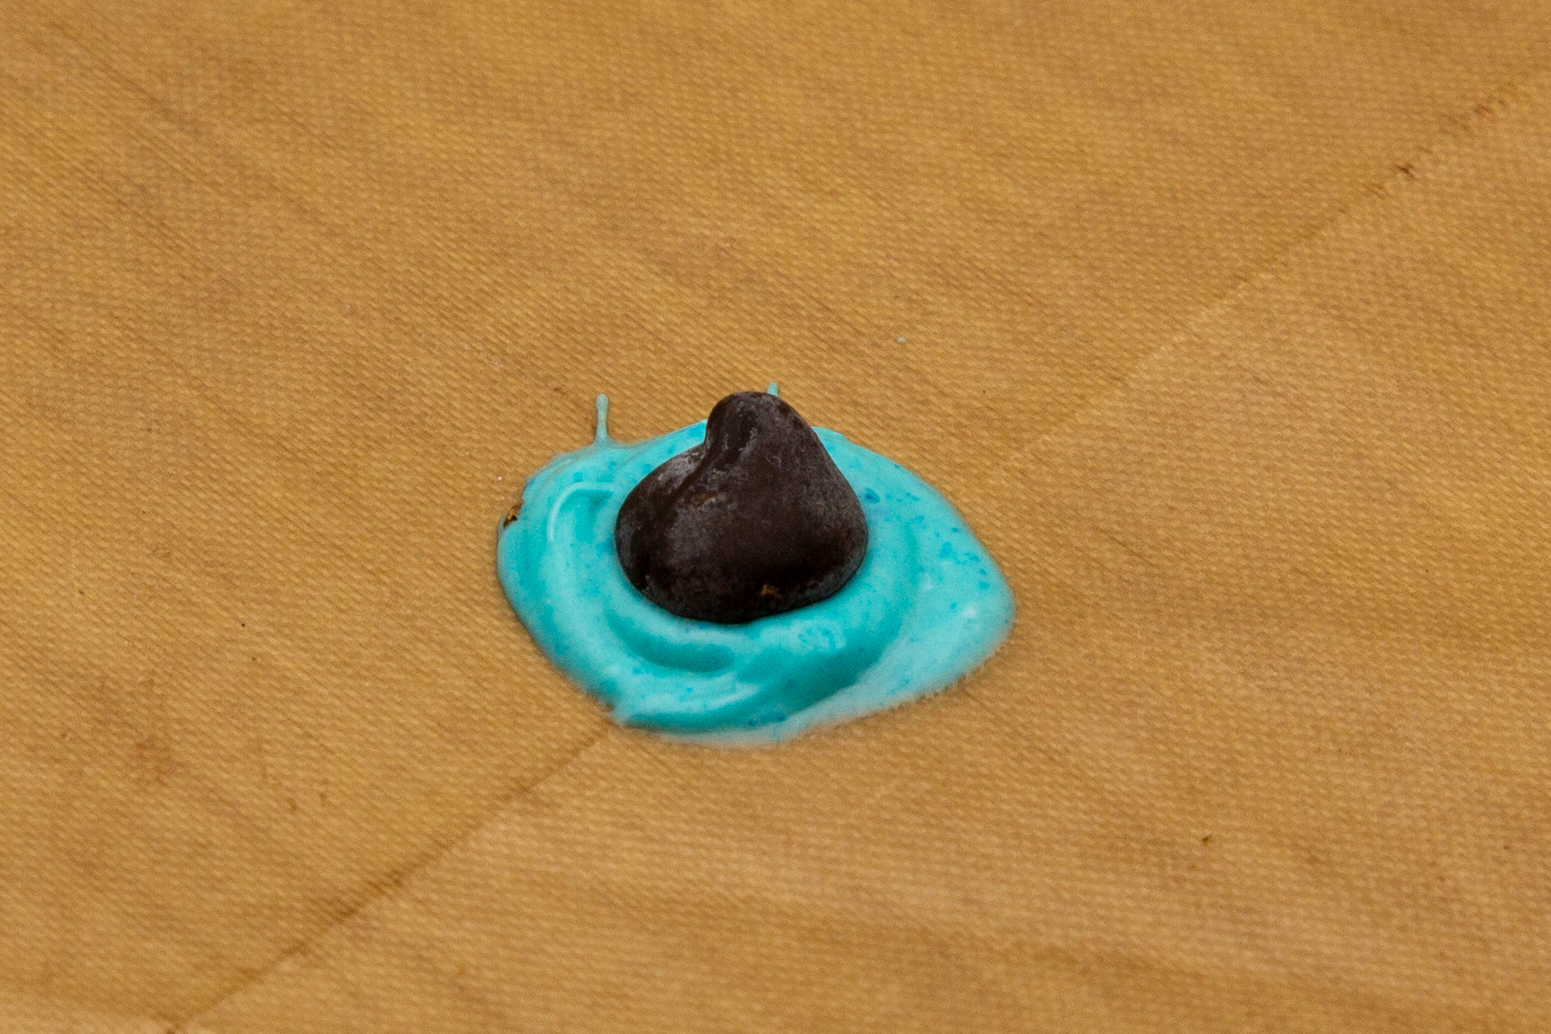 Blau gefärbte Schokolade mit Schokodrops als Augeniris.